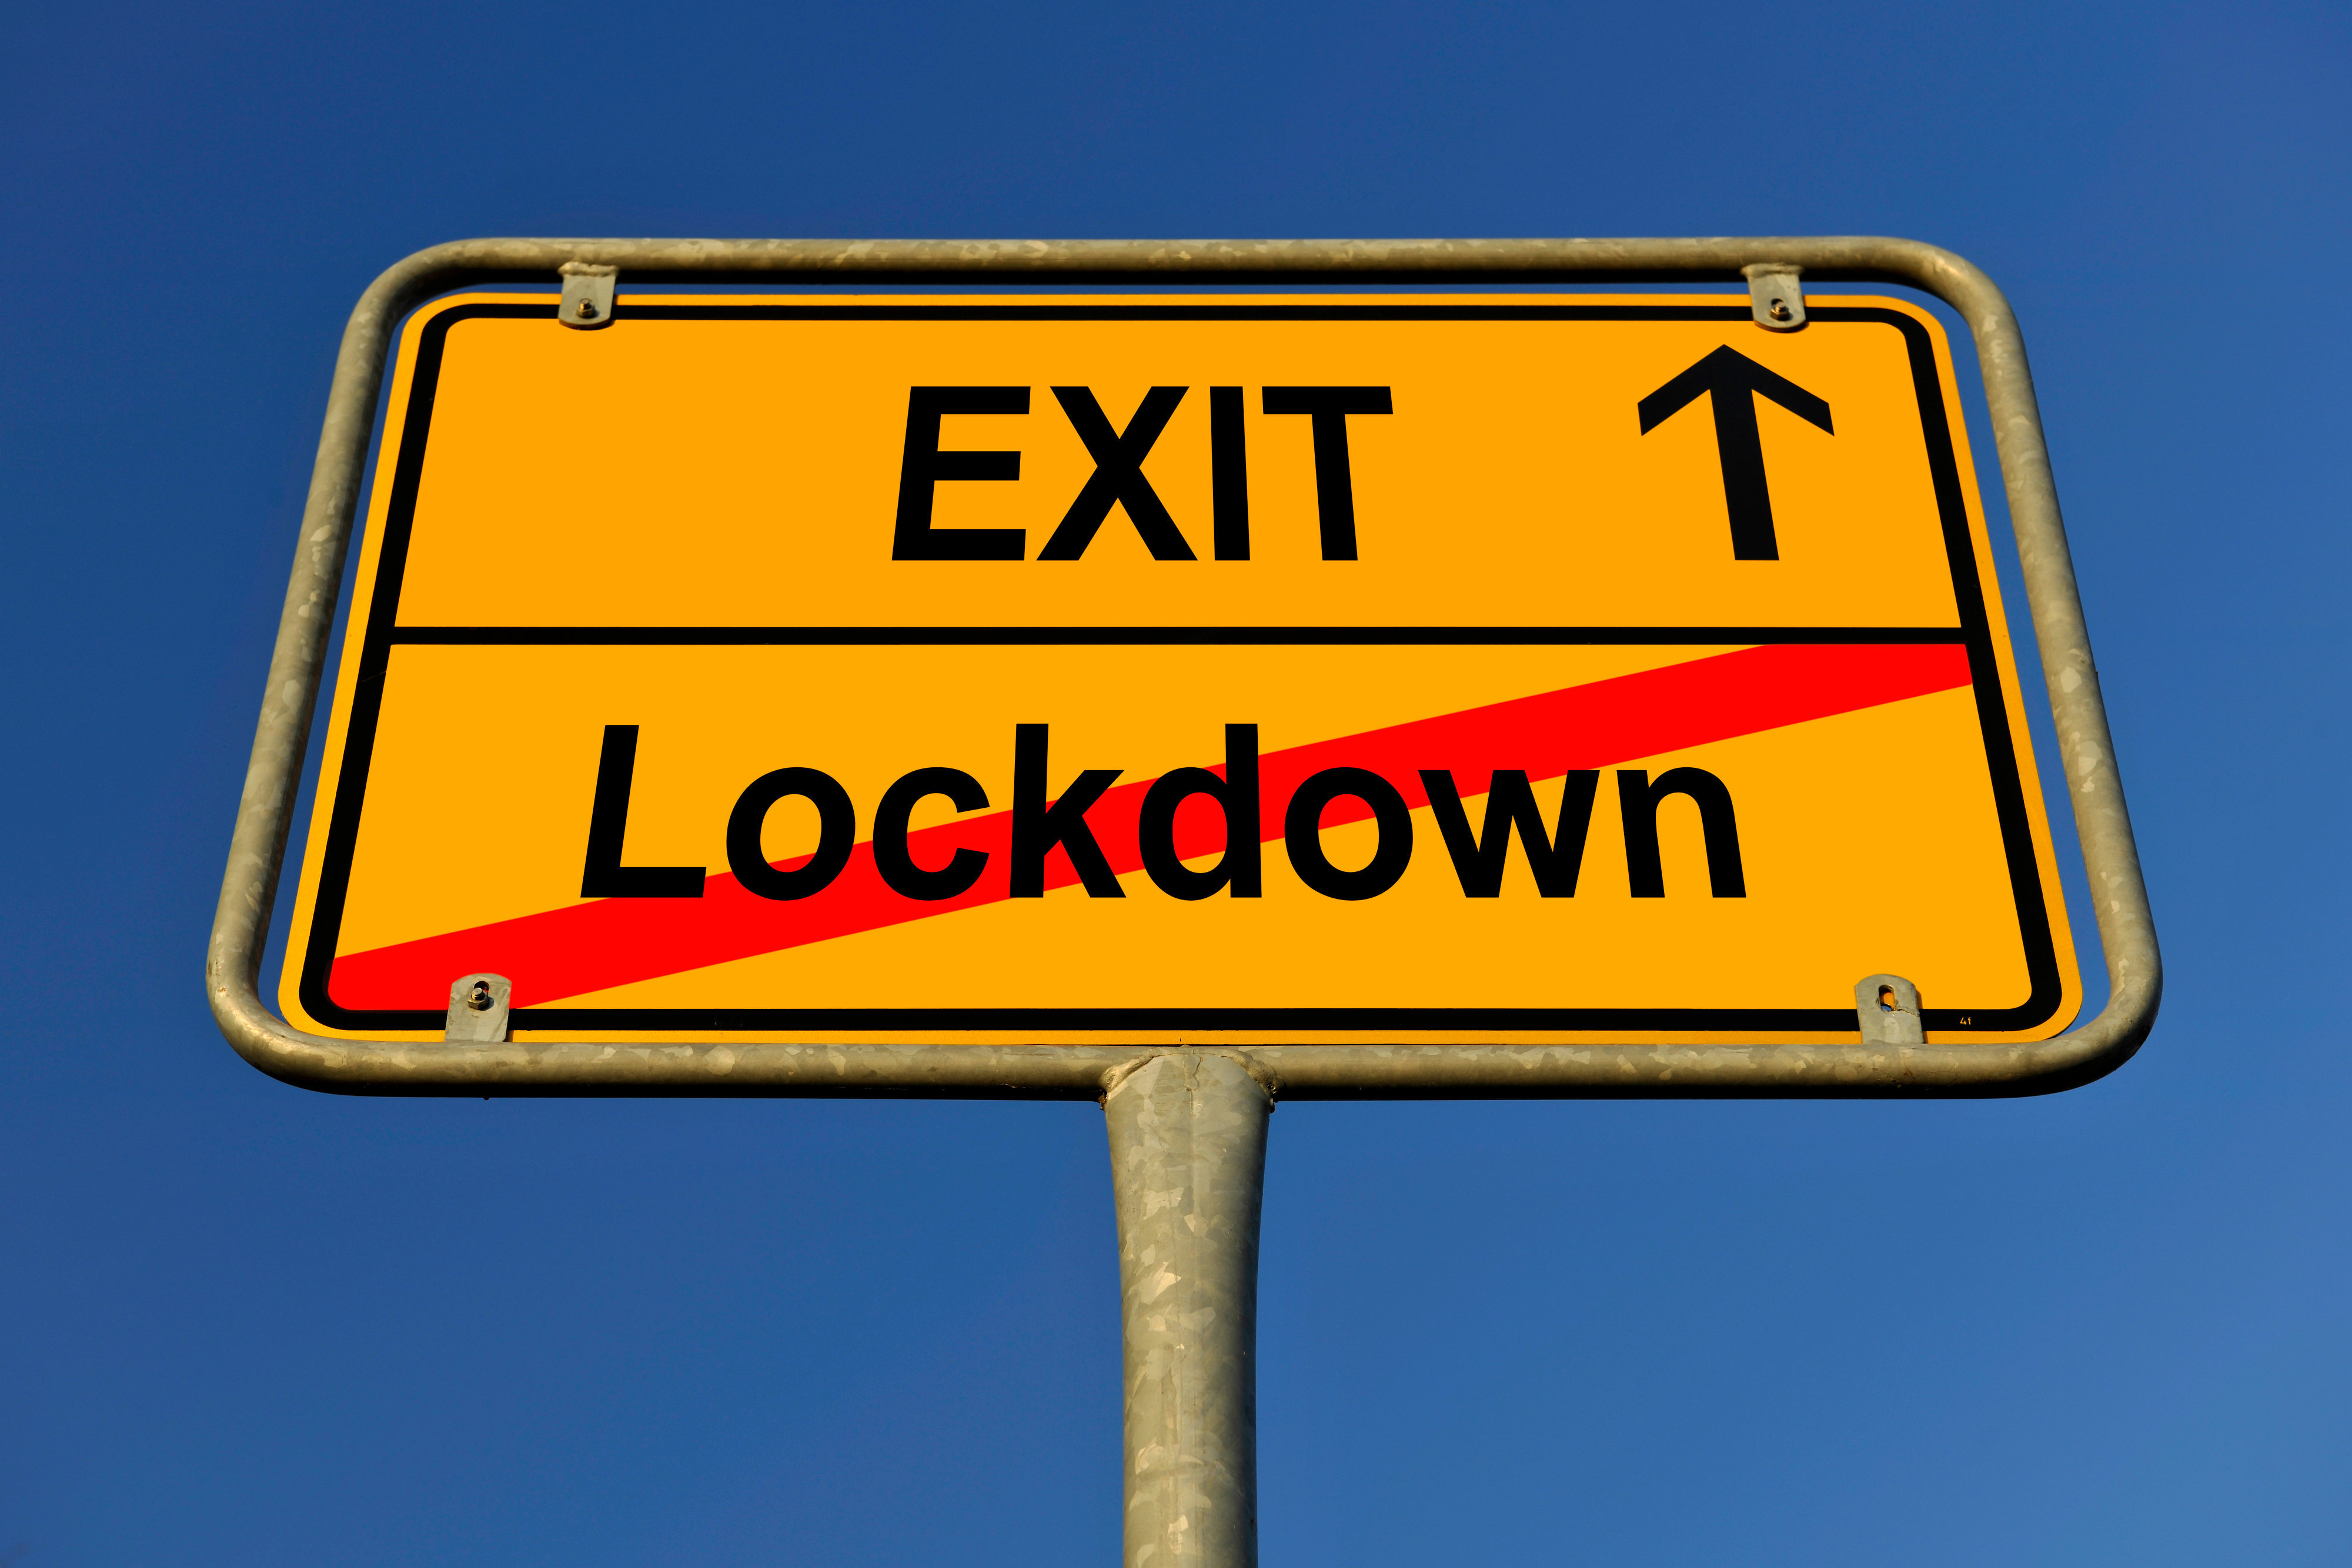 Lockdown Exit